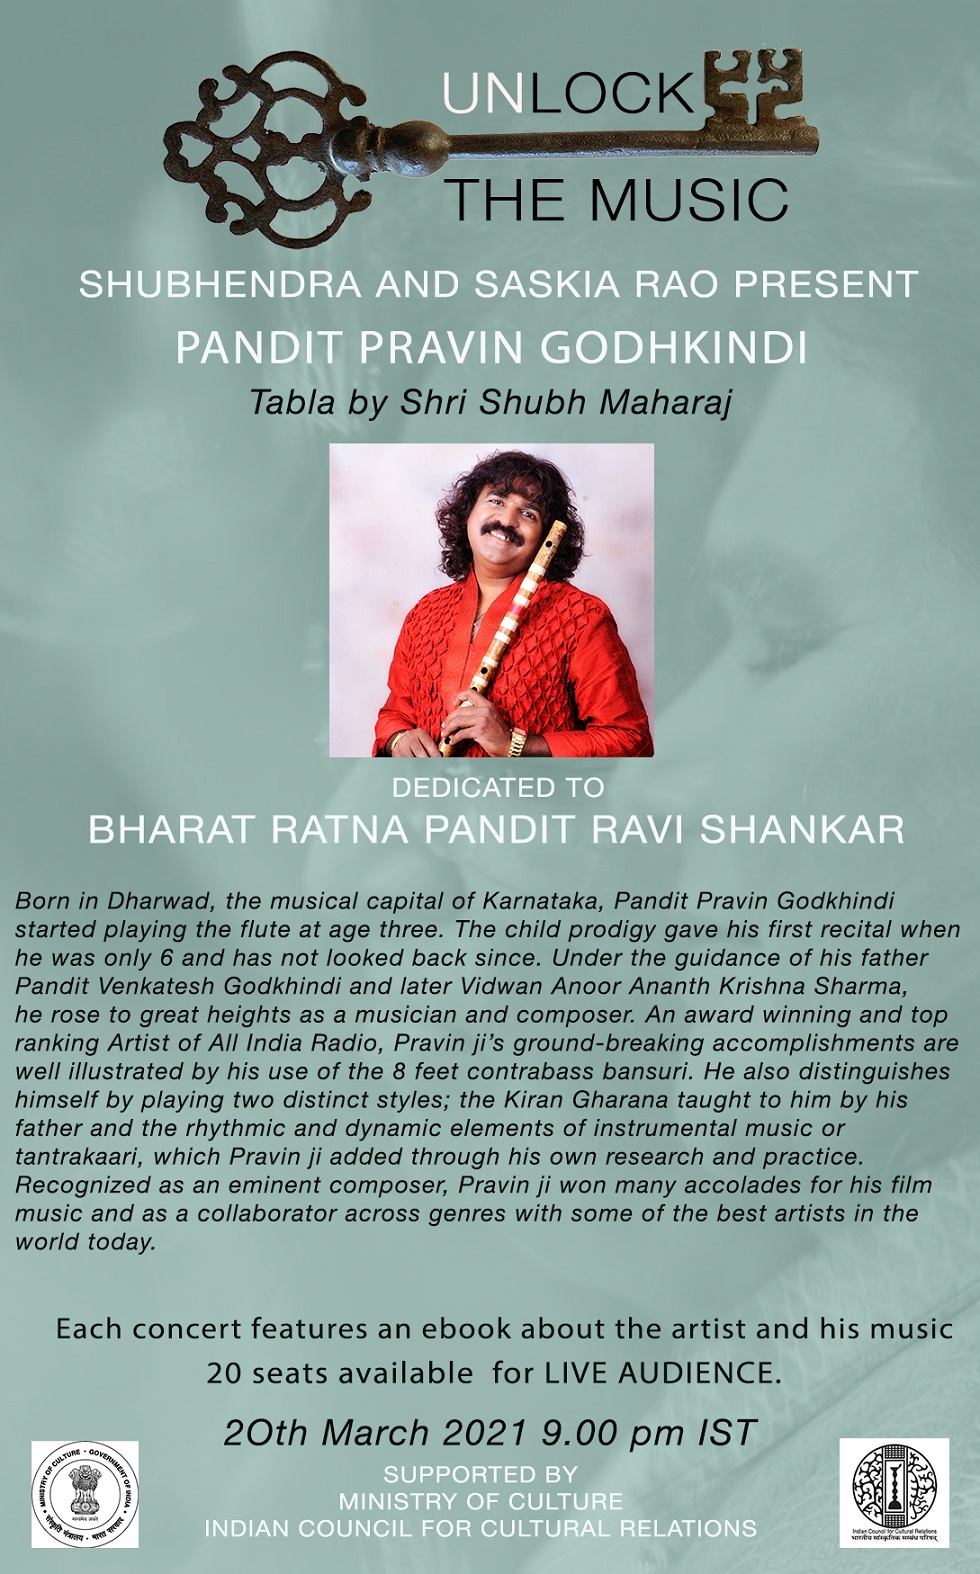 Spletni koncert v živo 20. 3. 2021 ob 16.30. uri: Pandit Pravin Godhkindi in Shri Shubh Maharaj na tabli